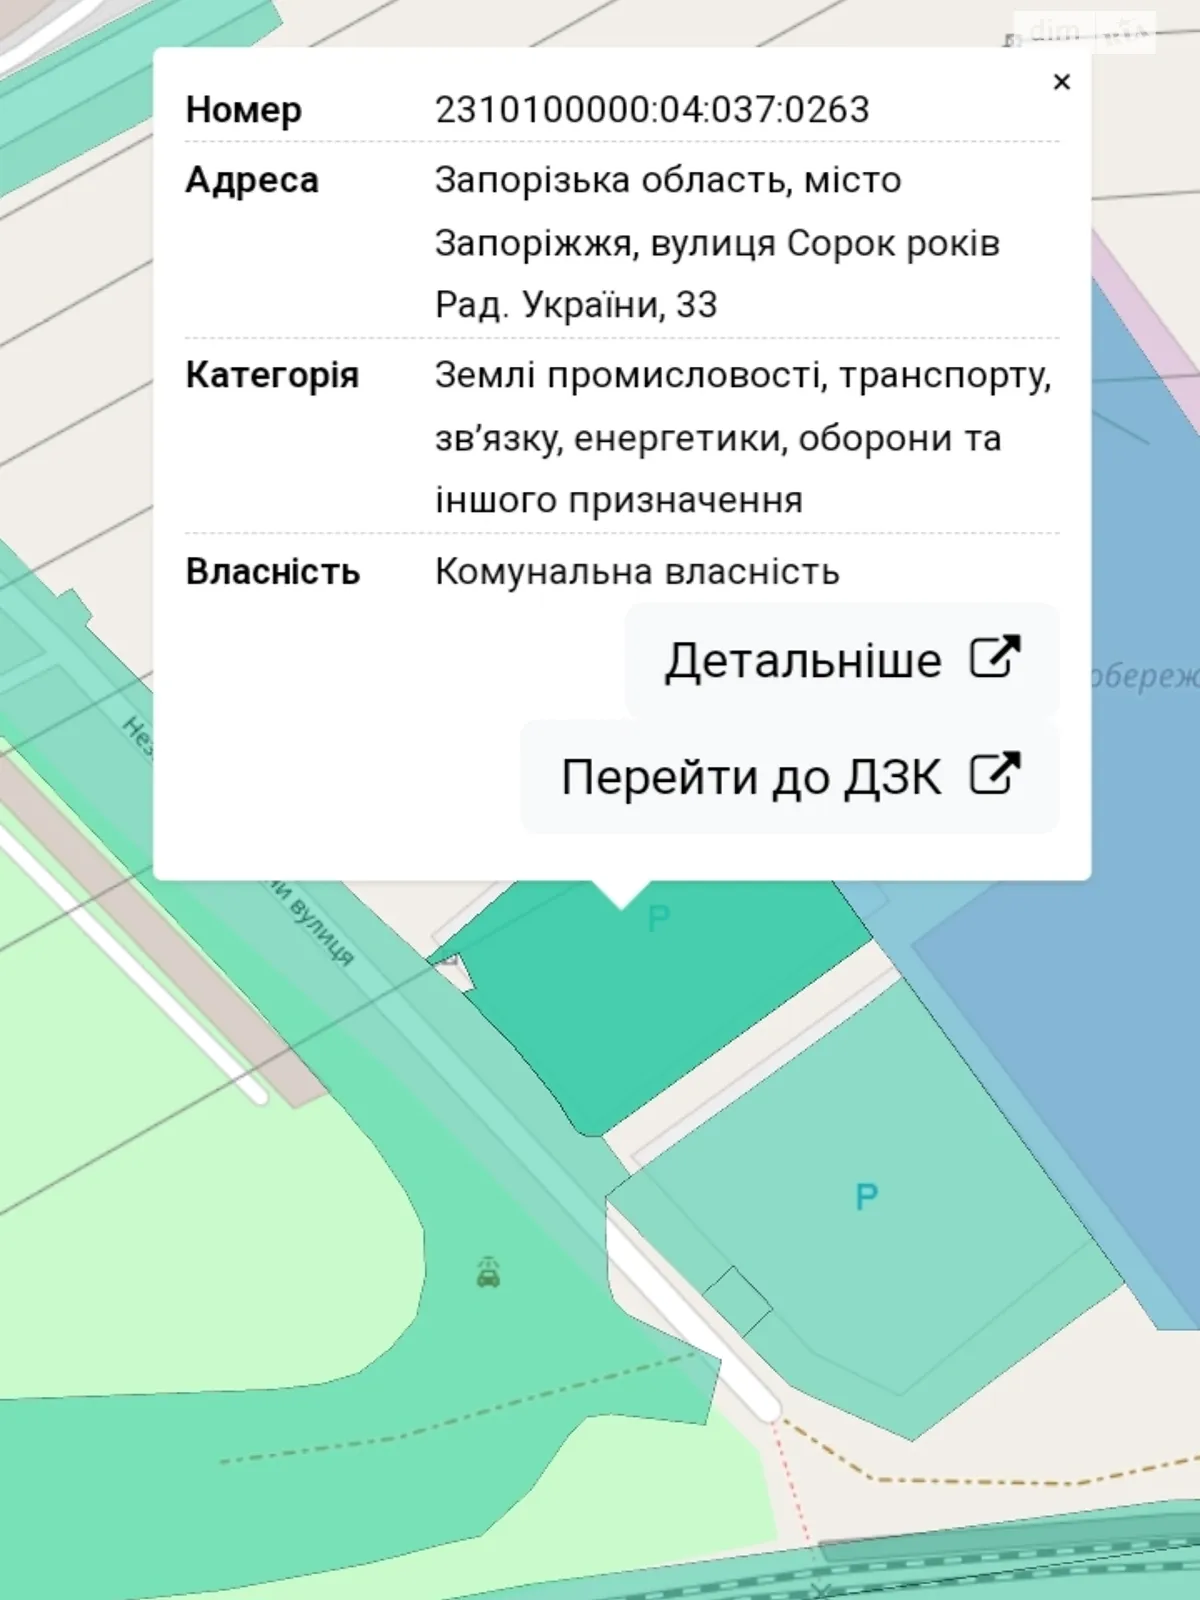 Продается земельный участок 0.3072 соток в Запорожской области - фото 2